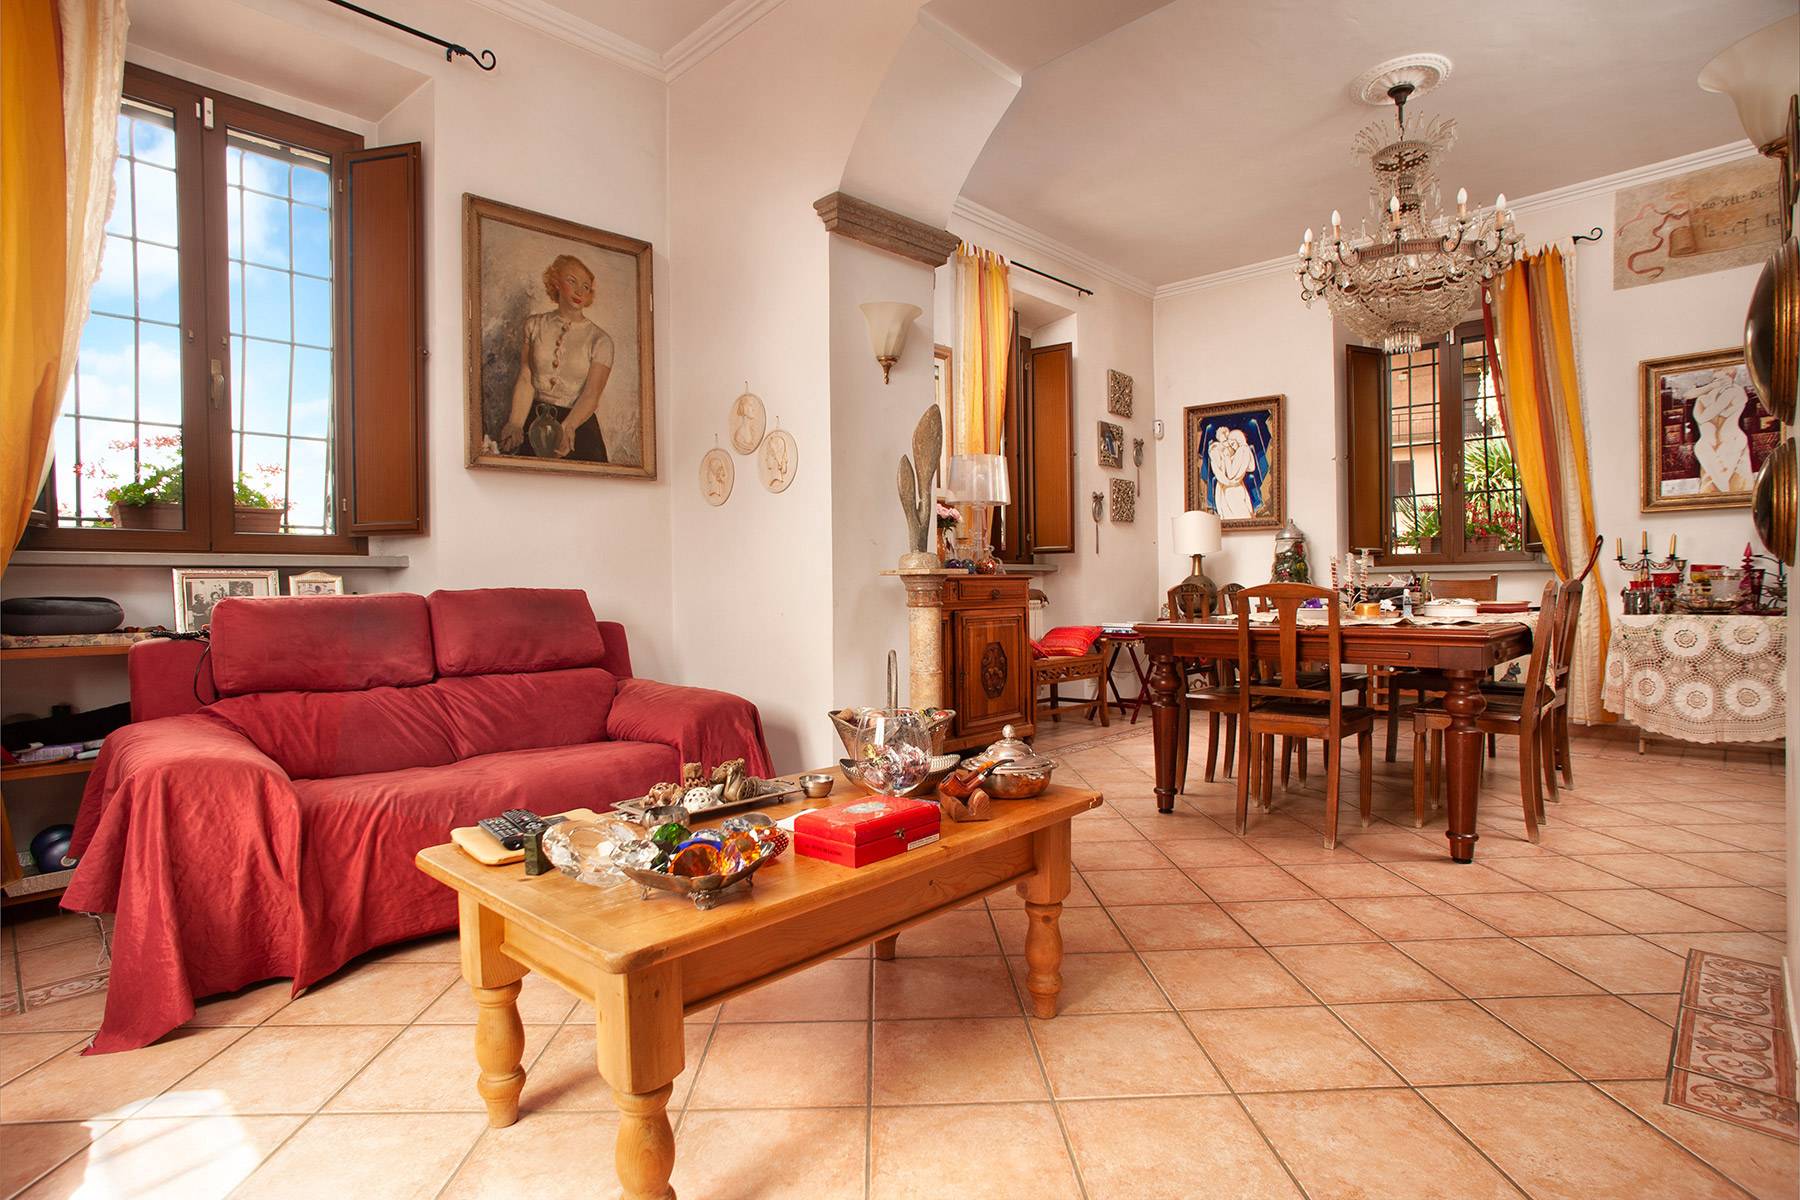 Villa in Vendita a Ronciglione: 5 locali, 500 mq - Foto 9